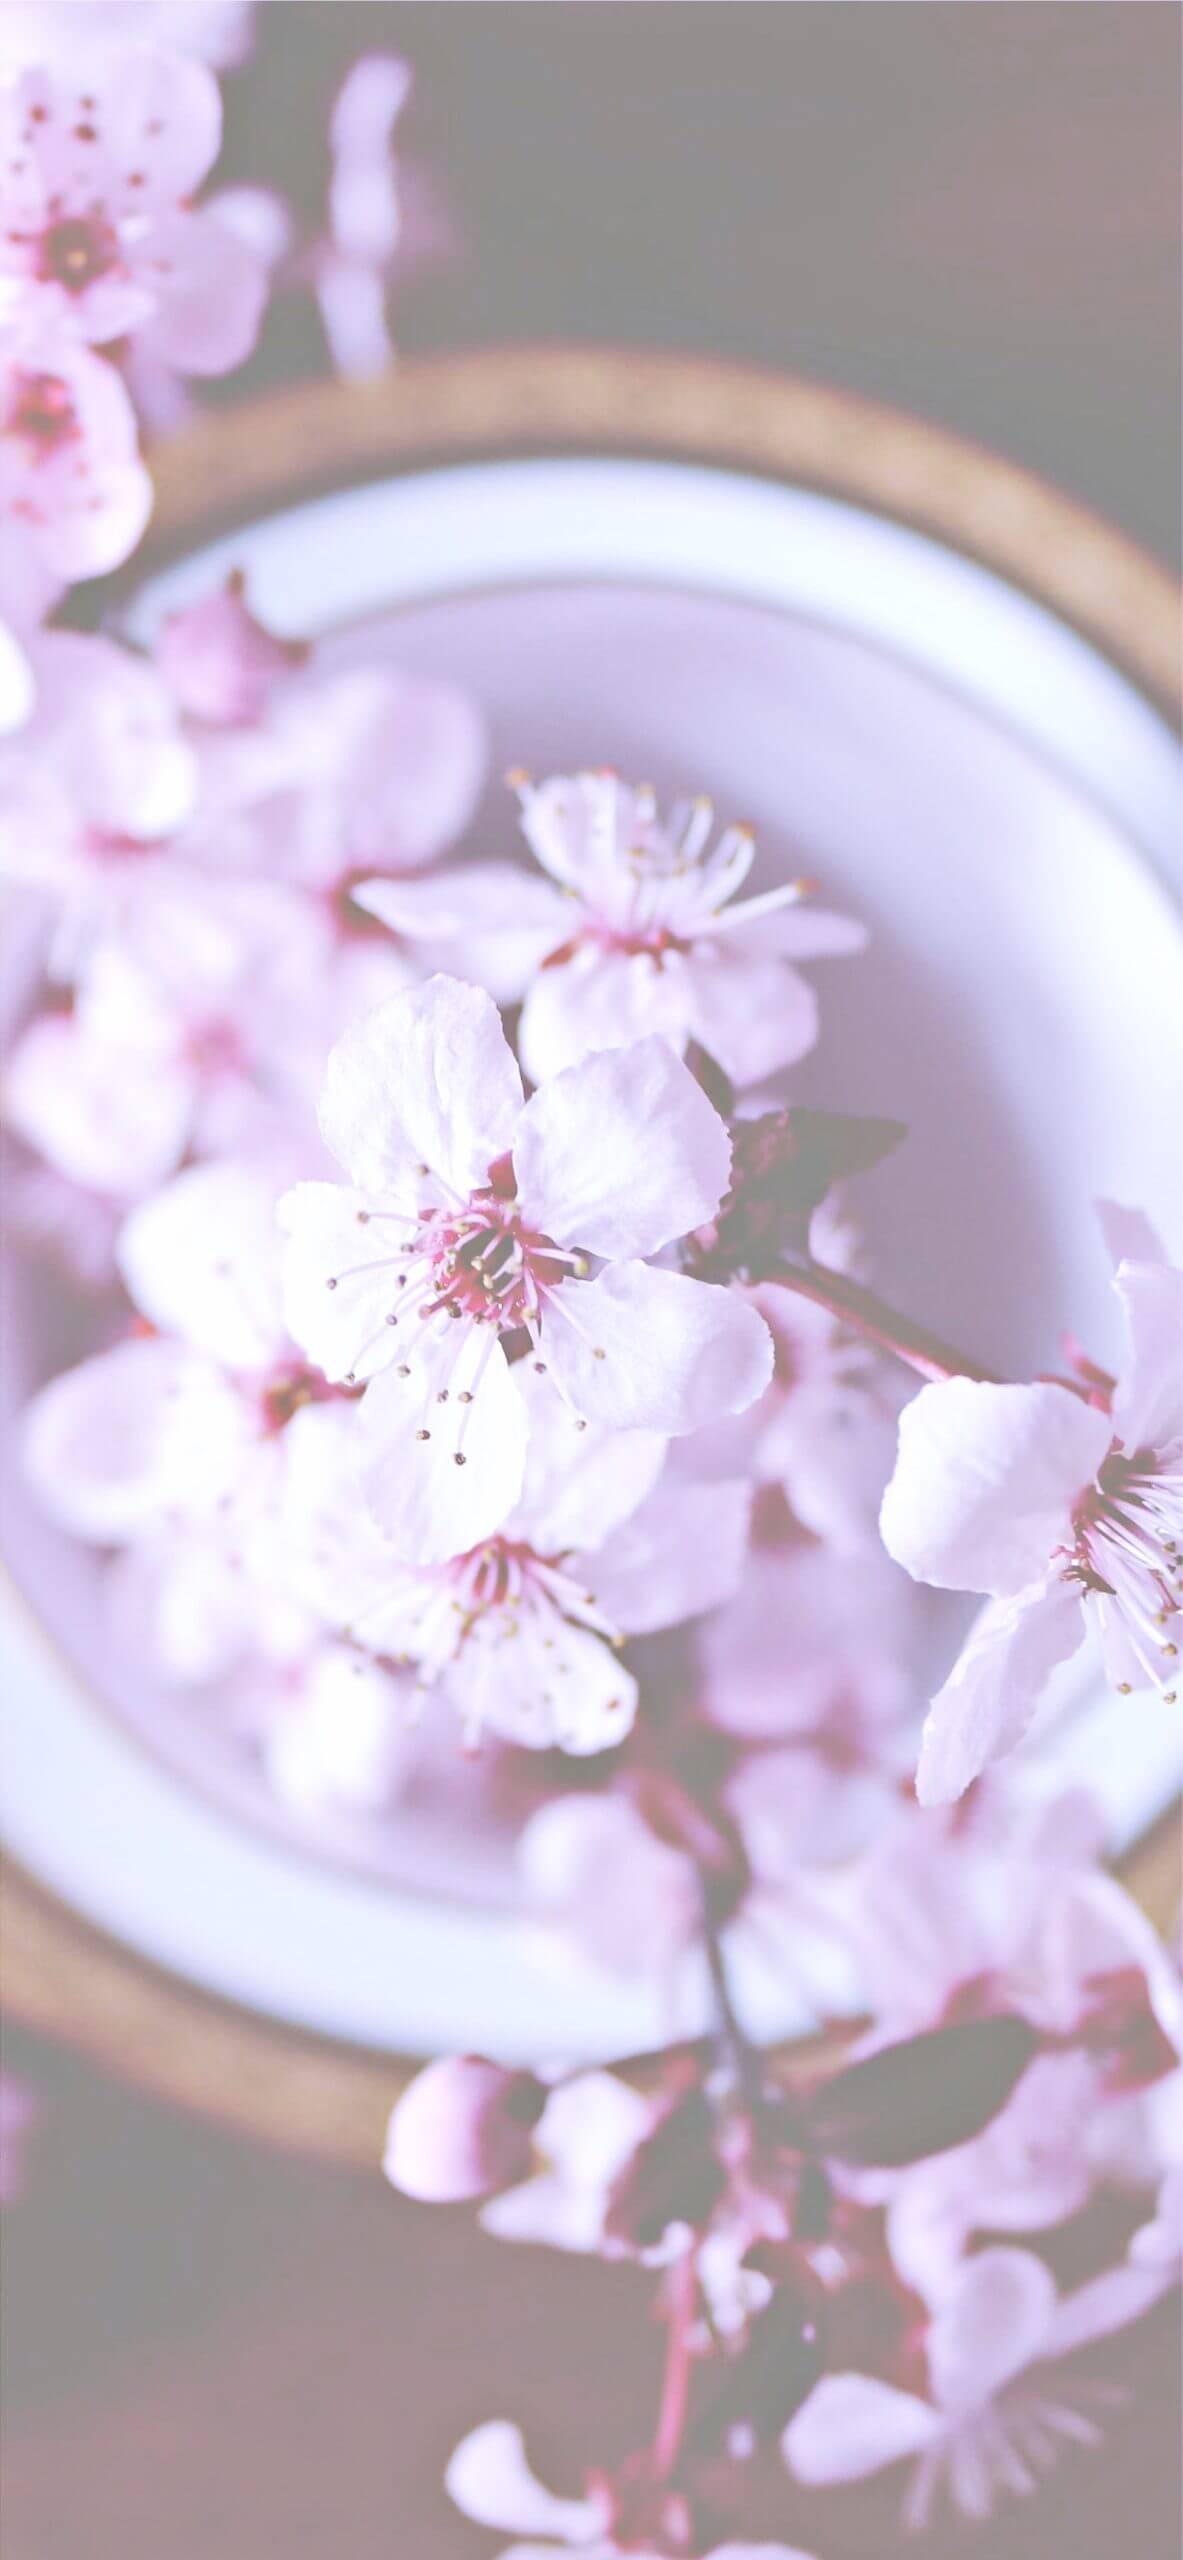 50 素晴らしい壁紙 桜 おしゃれ 最高の花の画像